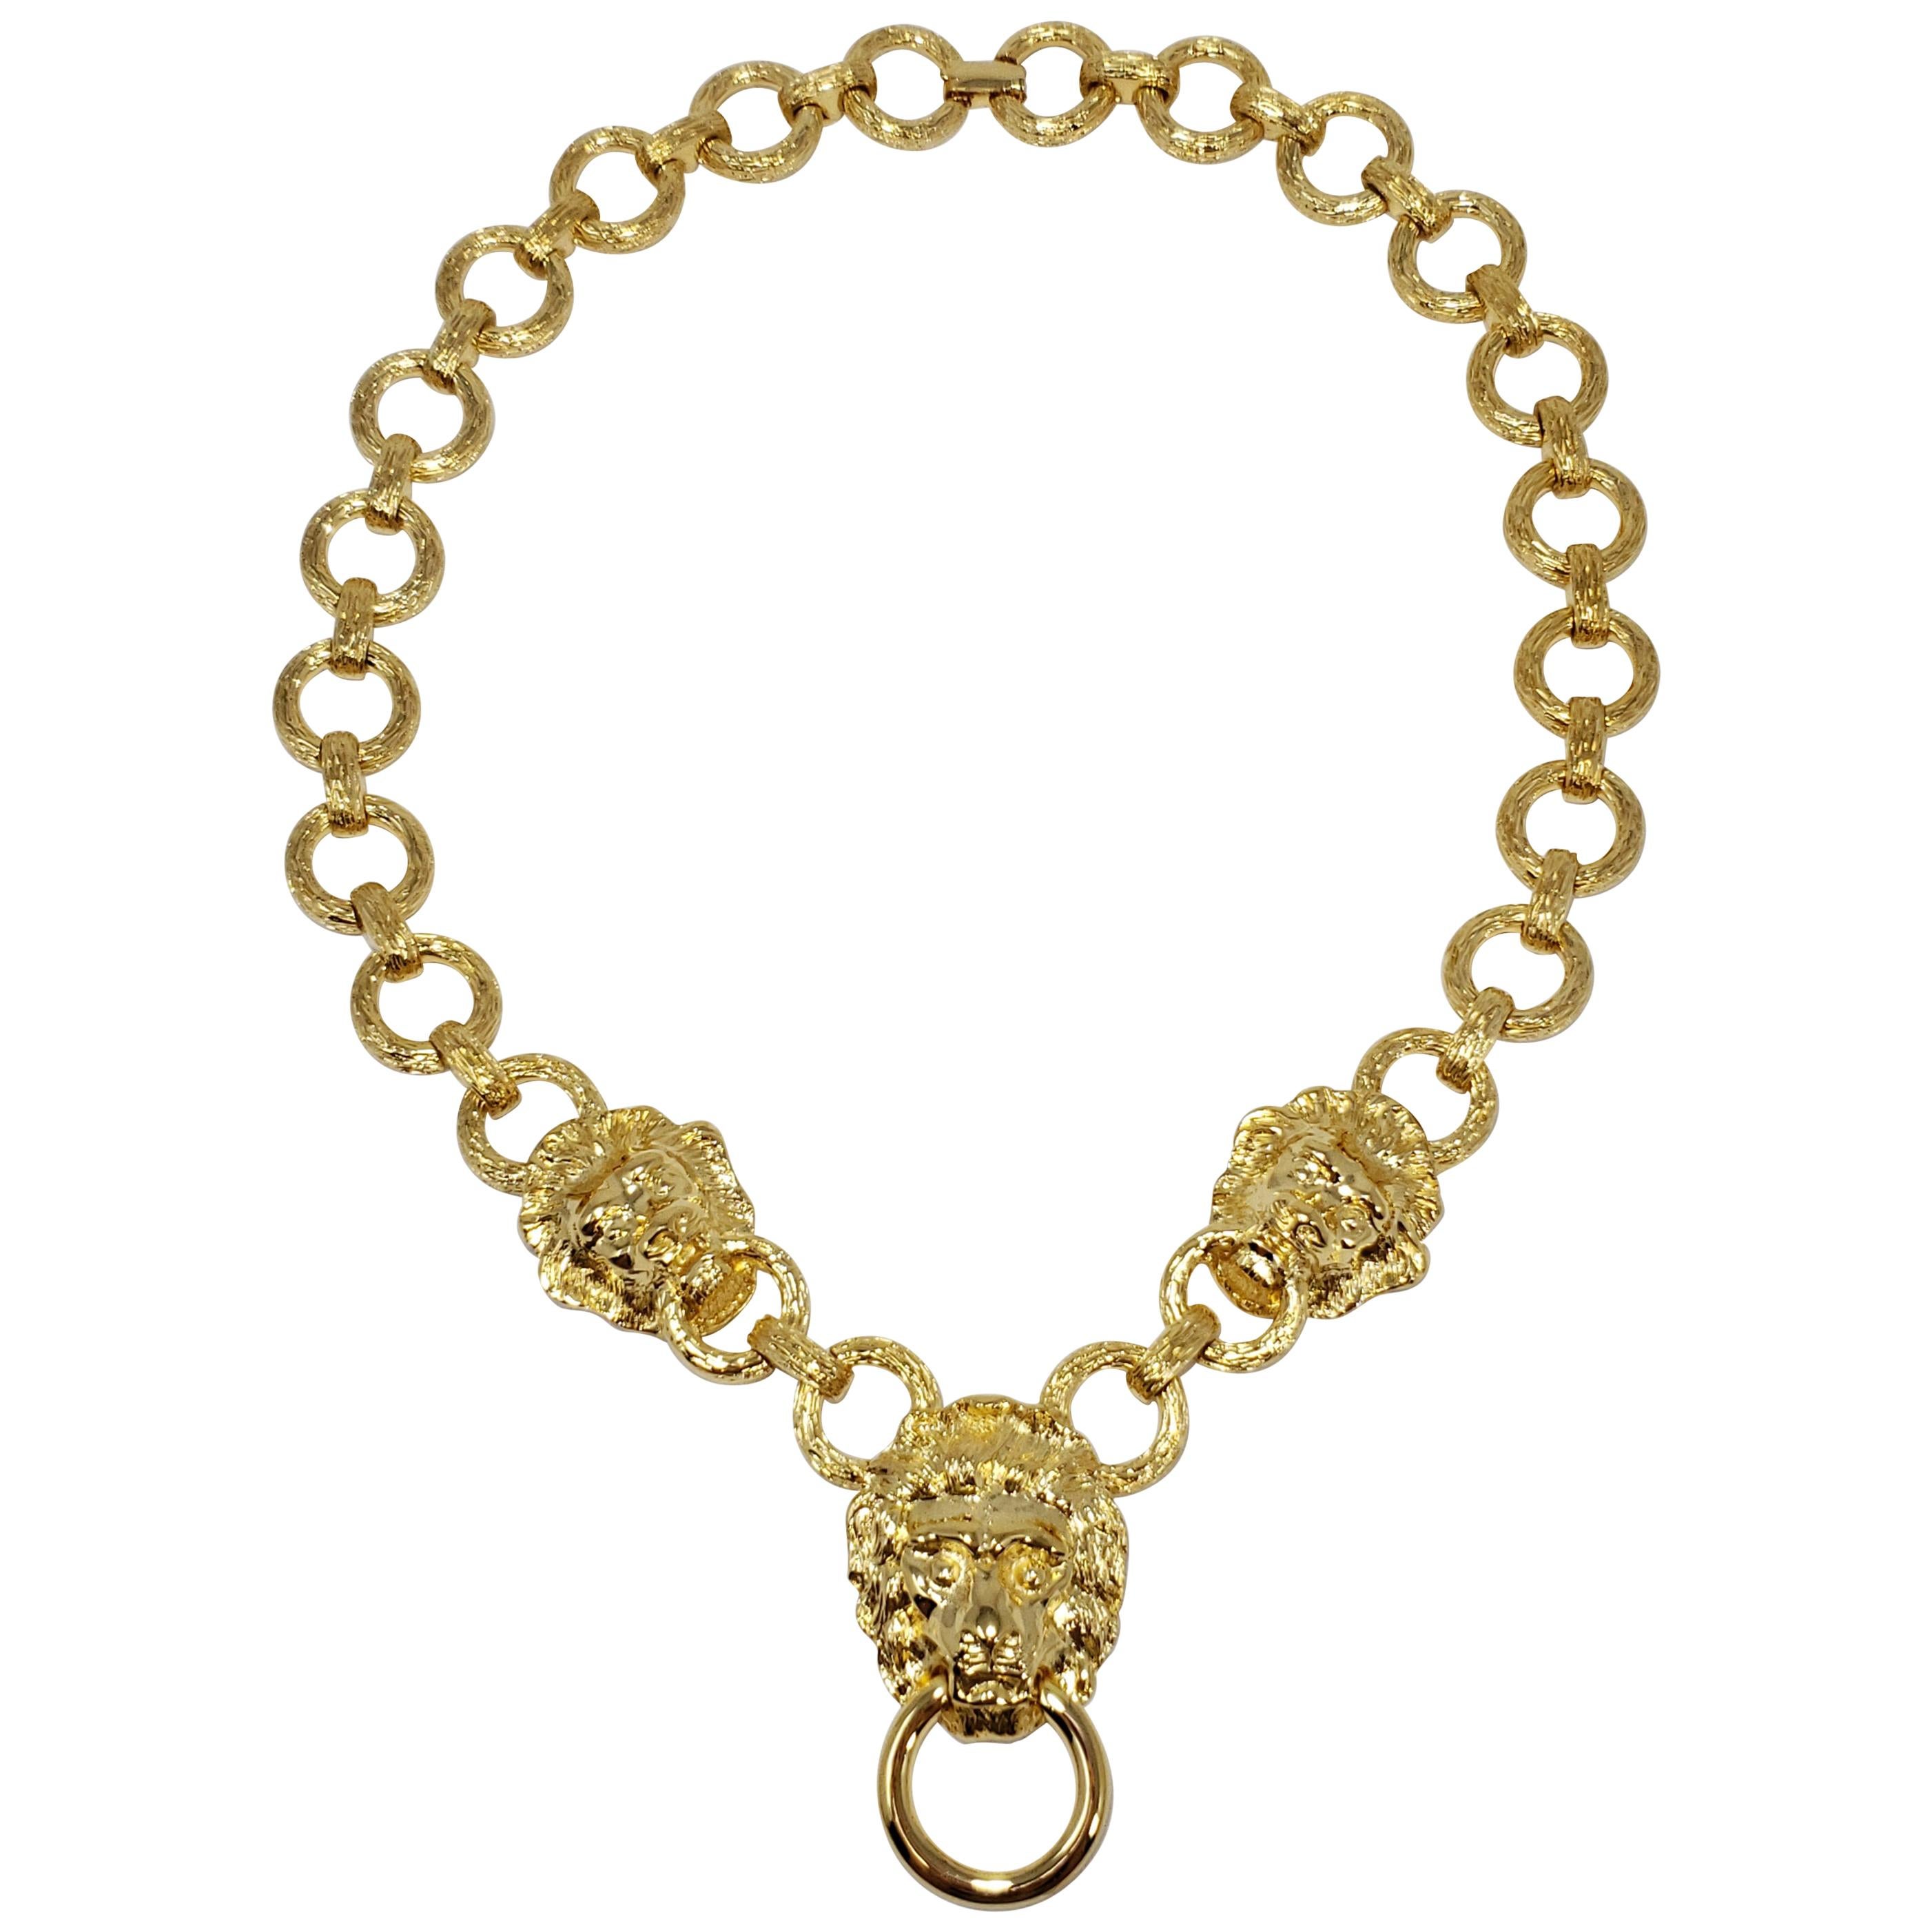 Kenneth Jay Lane KJL Lion Doorknocker Pendant Chain Link Necklace in Gold